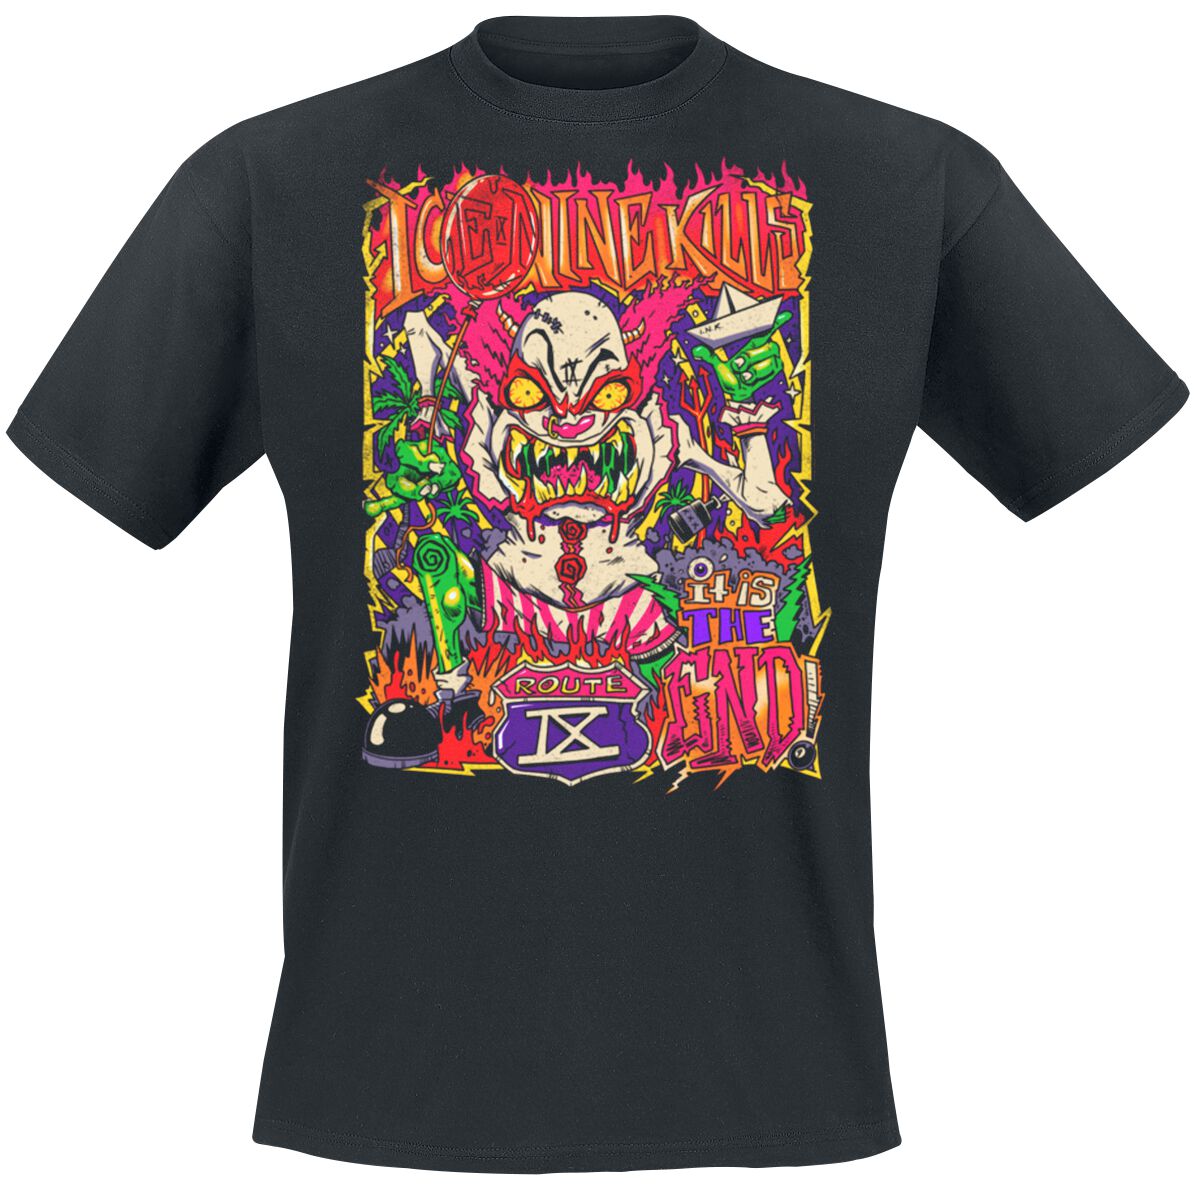 Ice Nine Kills T-Shirt - Clown Zombie - S bis 4XL - für Männer - Größe S - schwarz  - Lizenziertes Merchandise!